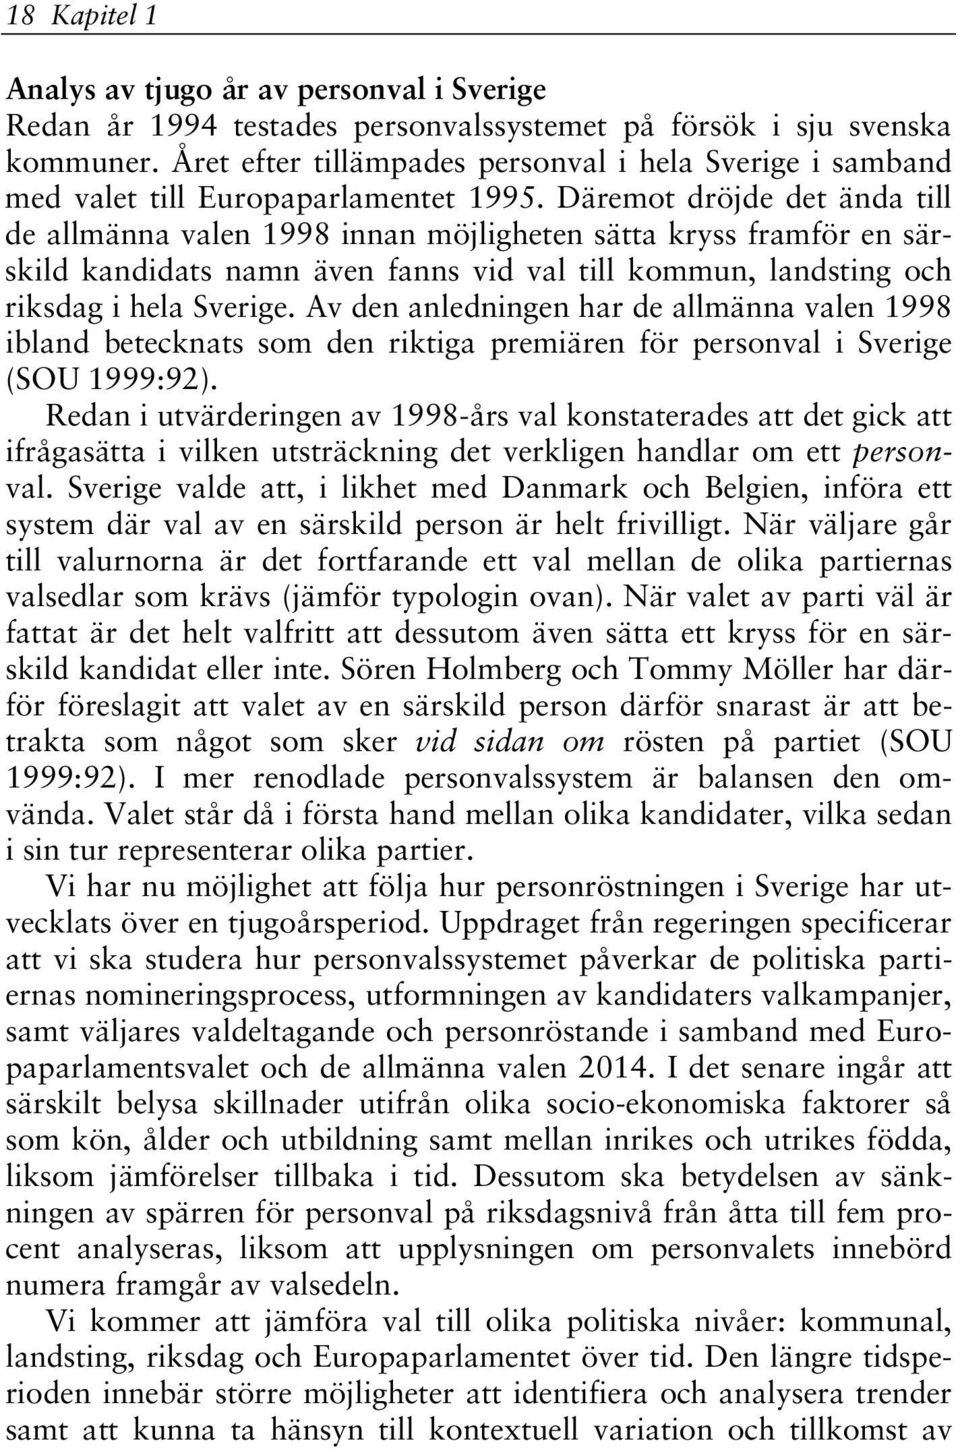 Däremot dröjde det ända till de allmänna valen 1998 innan möjligheten sätta kryss framför en särskild kandidats namn även fanns vid val till kommun, landsting och riksdag i hela Sverige.